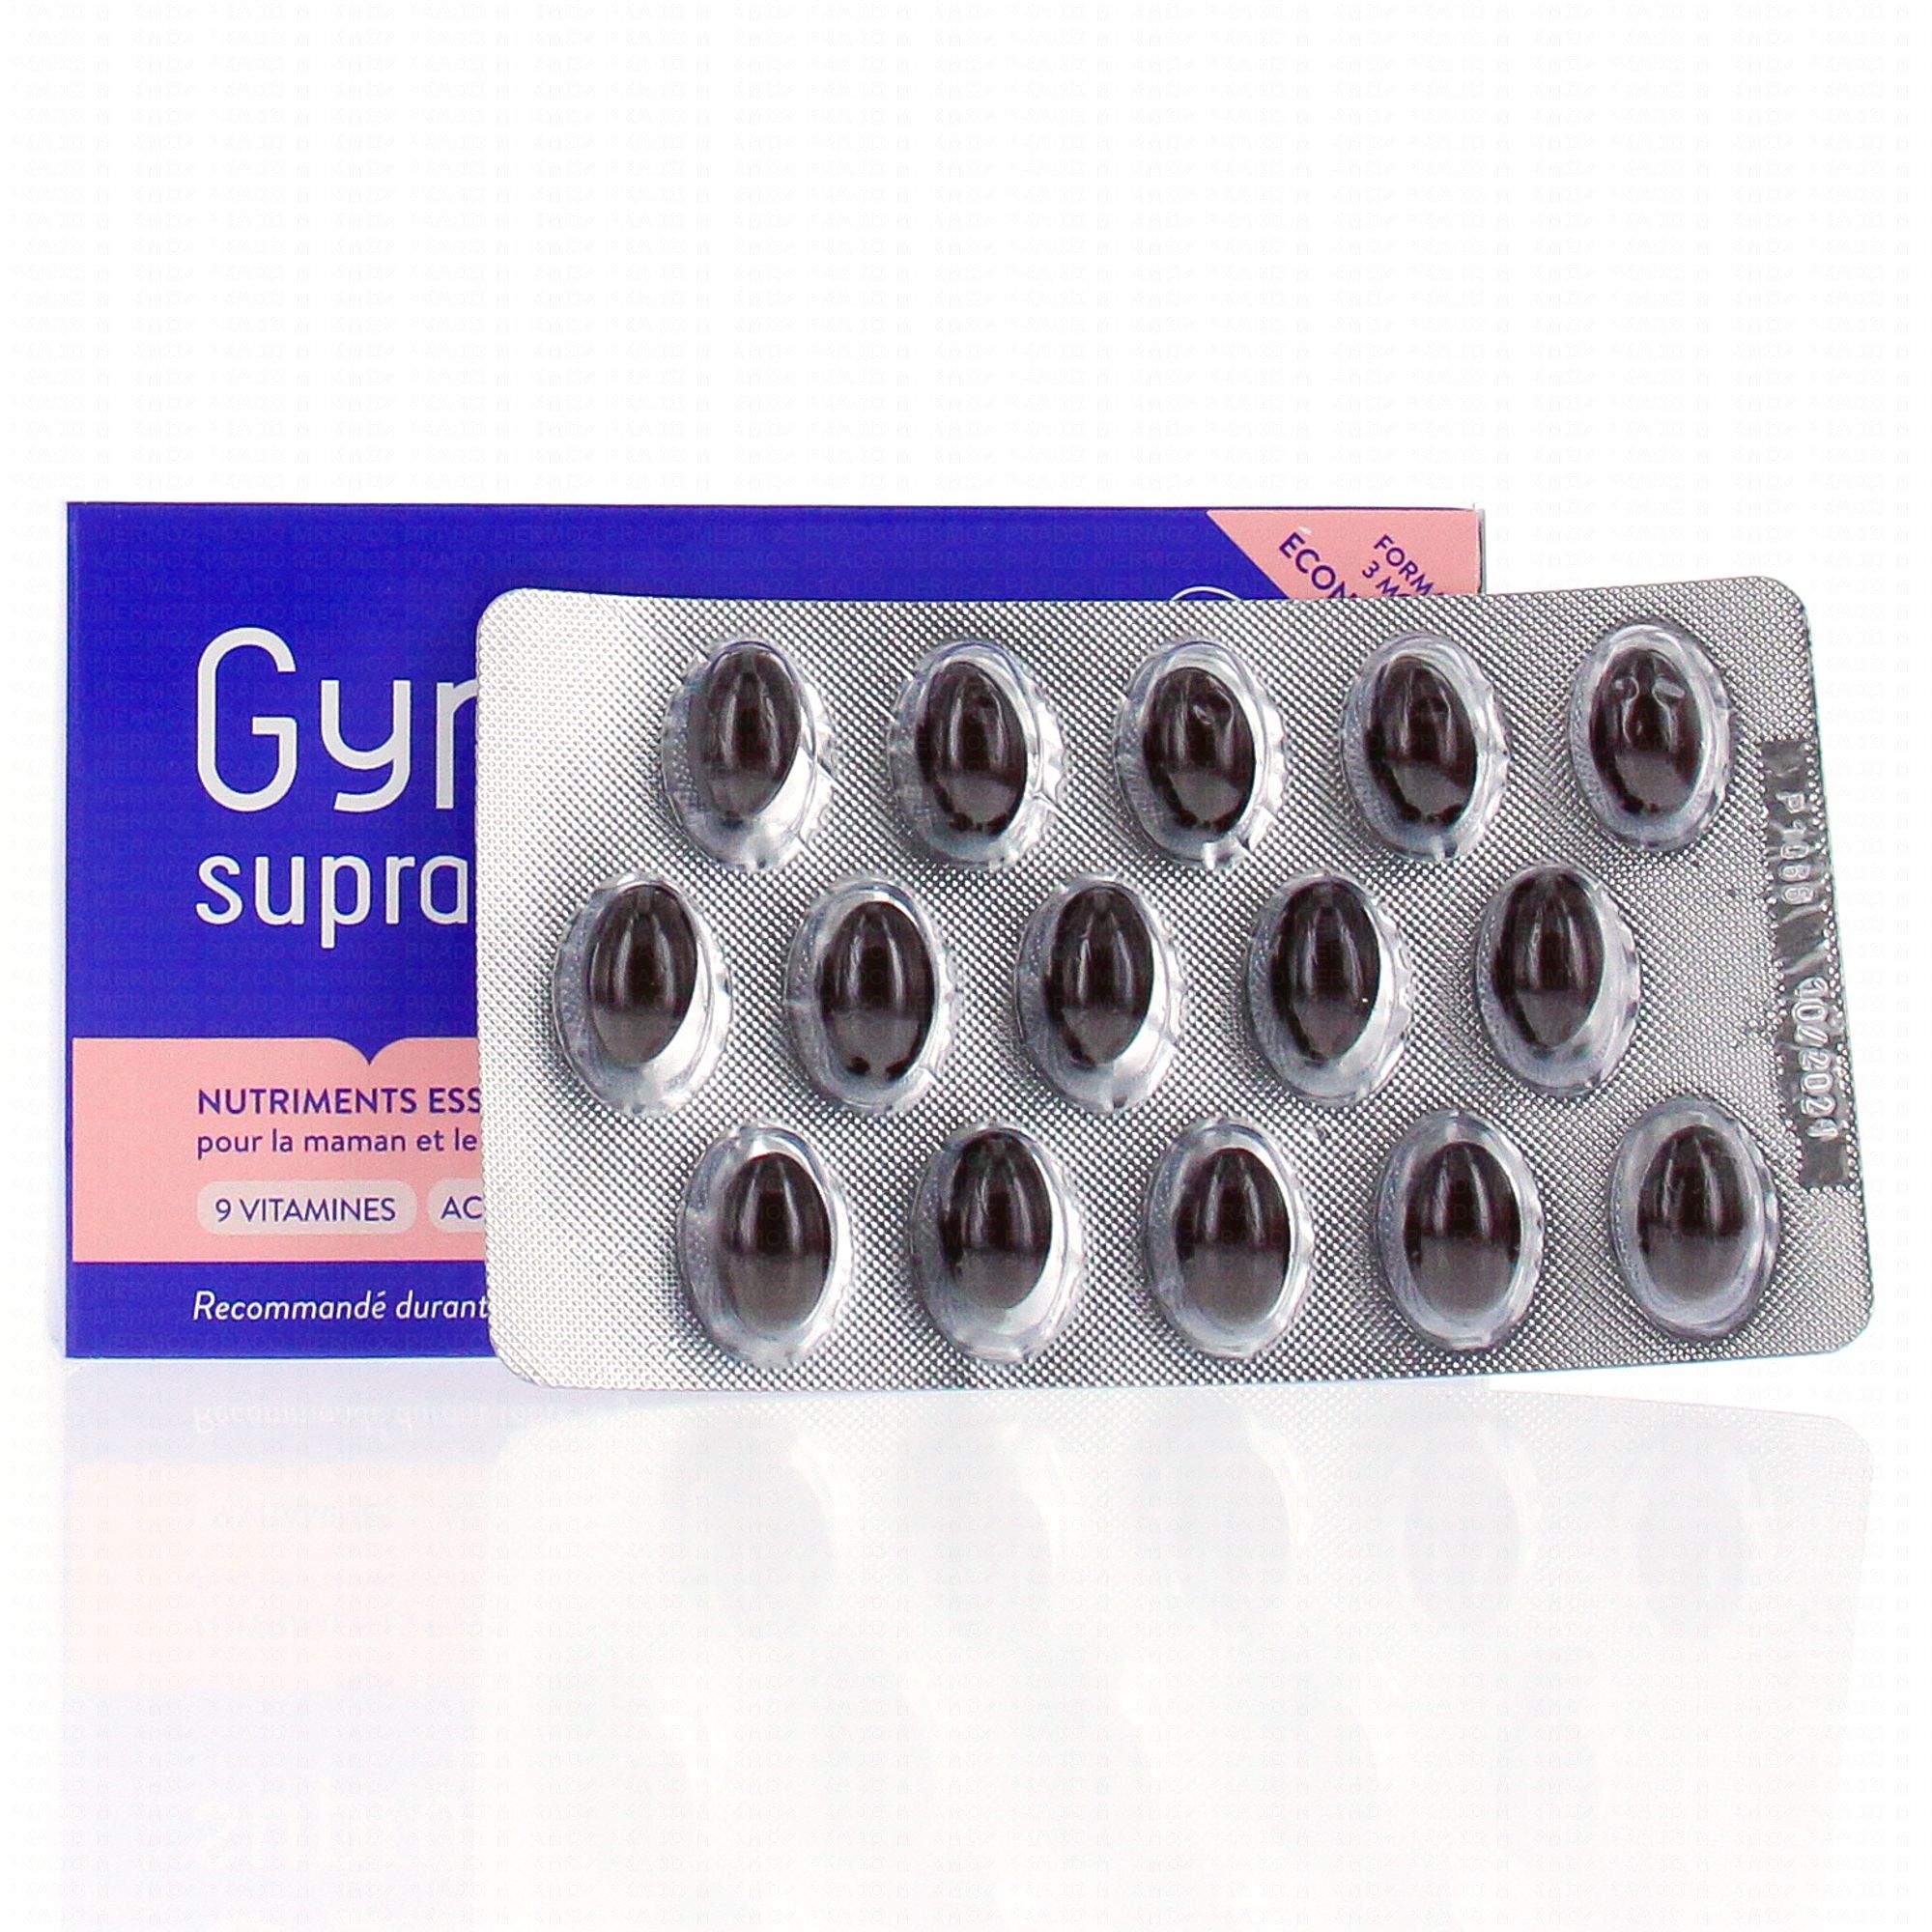 Pharmaservices - Gynéfam Suprapréconception en boite de 60 capsules